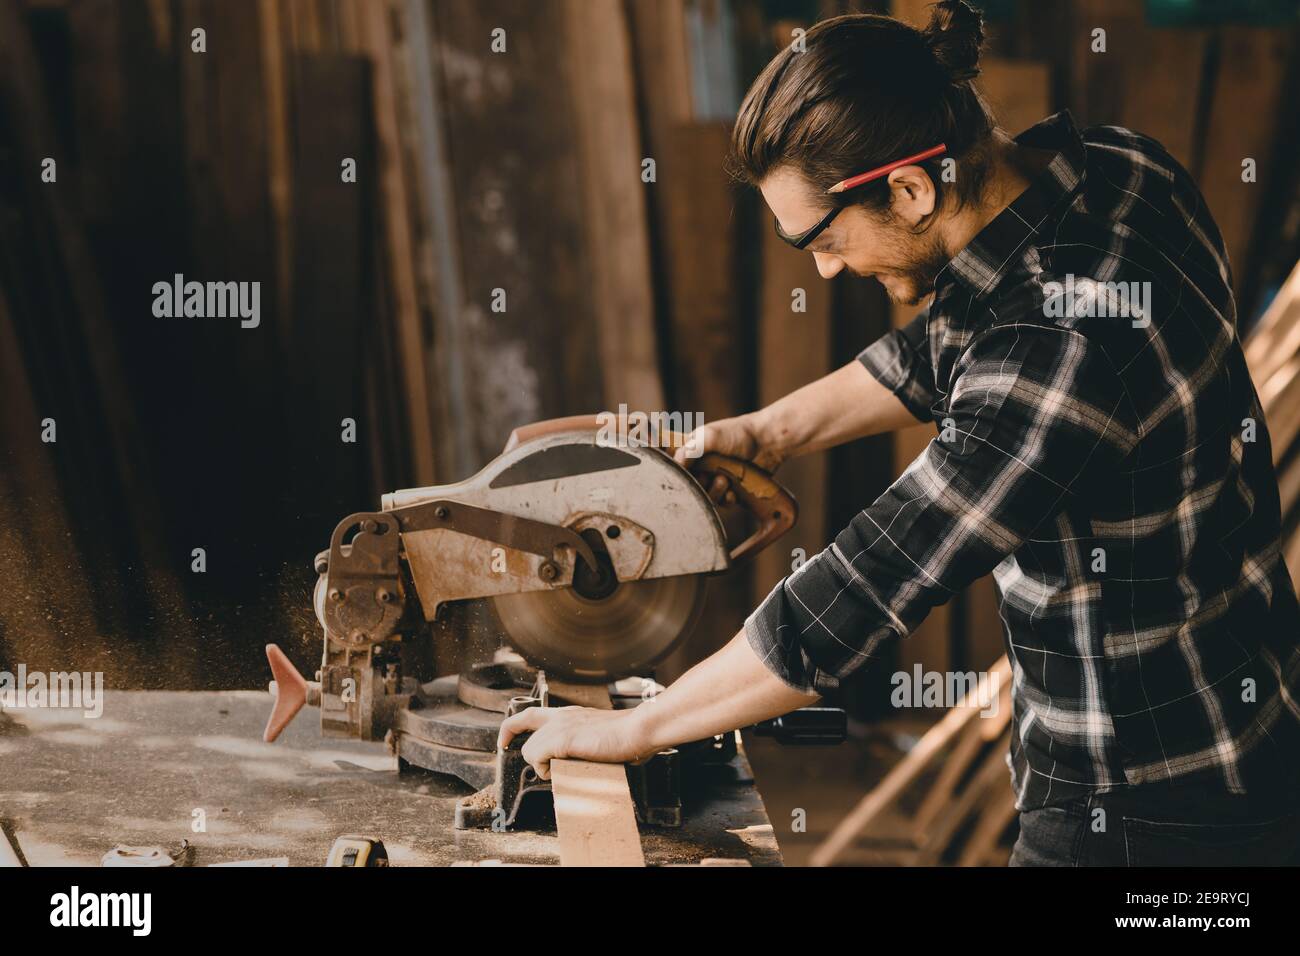 Zimmermann mit Elektro-Holzschneider Holzarbeiten in Möbel Holz-Werkstatt mit professioneller Fähigkeit echte Menschen workman.image enthalten Lärm Stockfoto